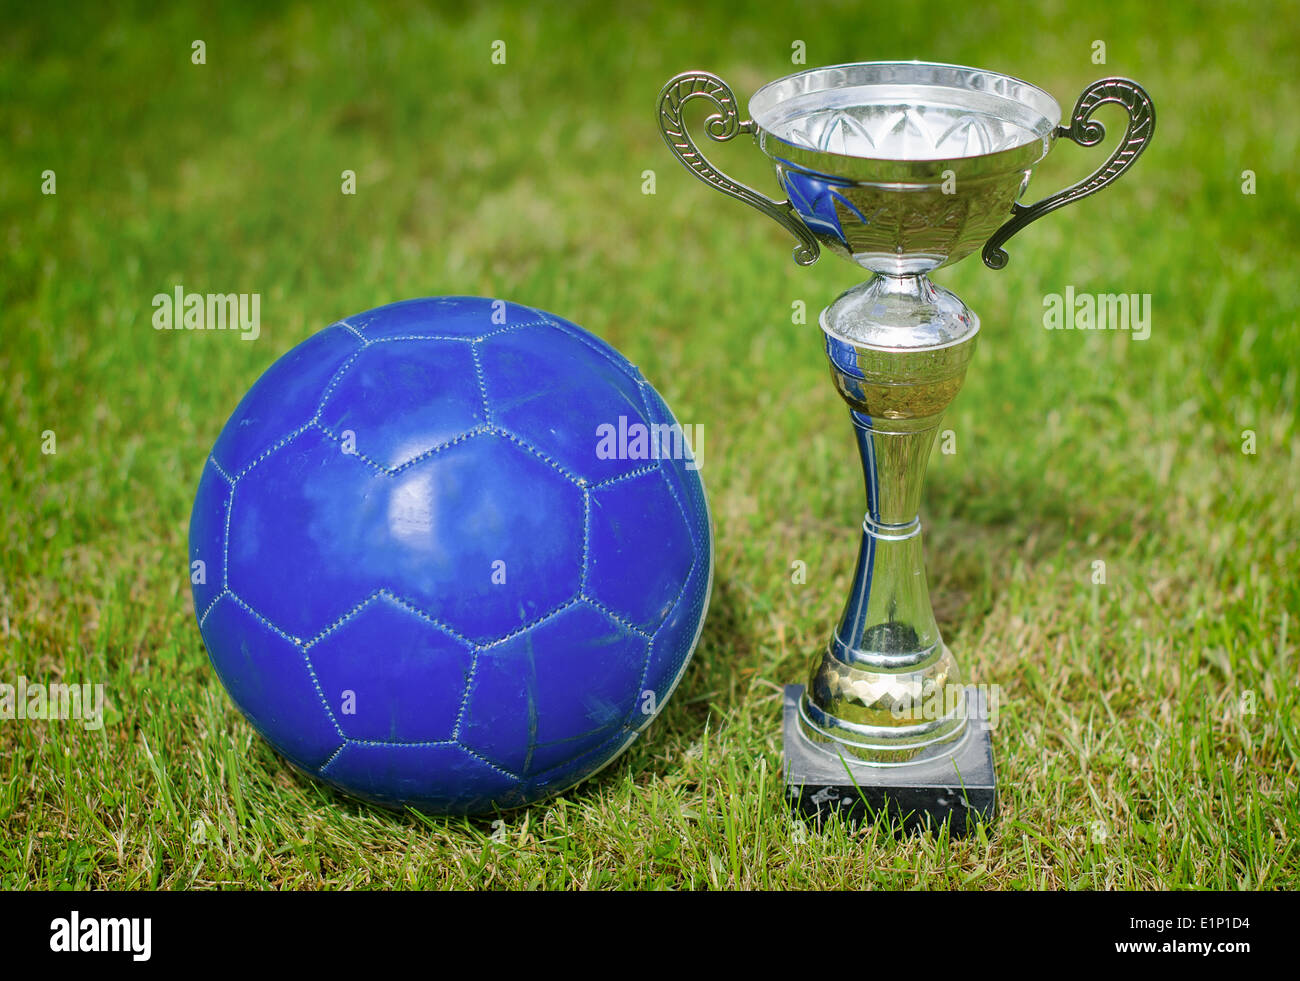 Trofeo del fútbol foto de archivo editorial. Imagen de campeones - 35994118